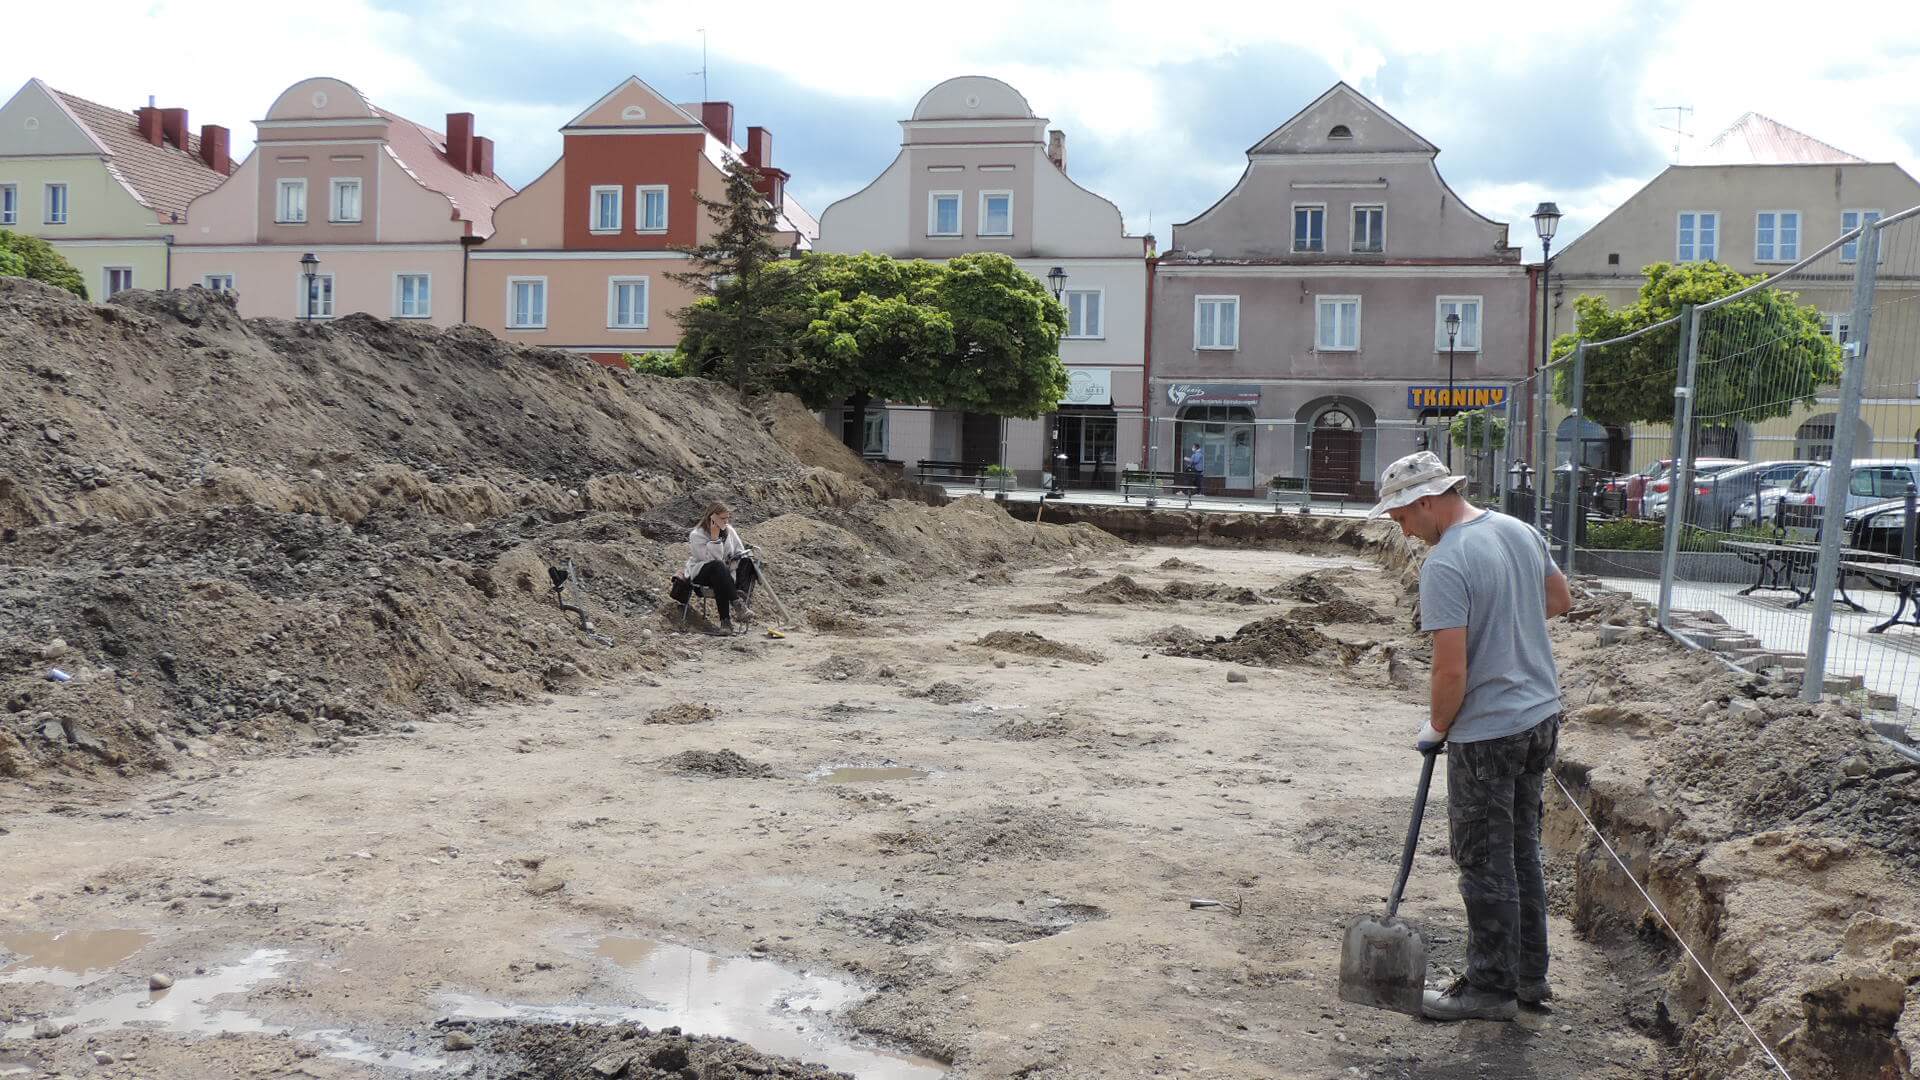 Prace archeologiczne na Starym Rynku w Łomży, fot. Adam Dąbrowski